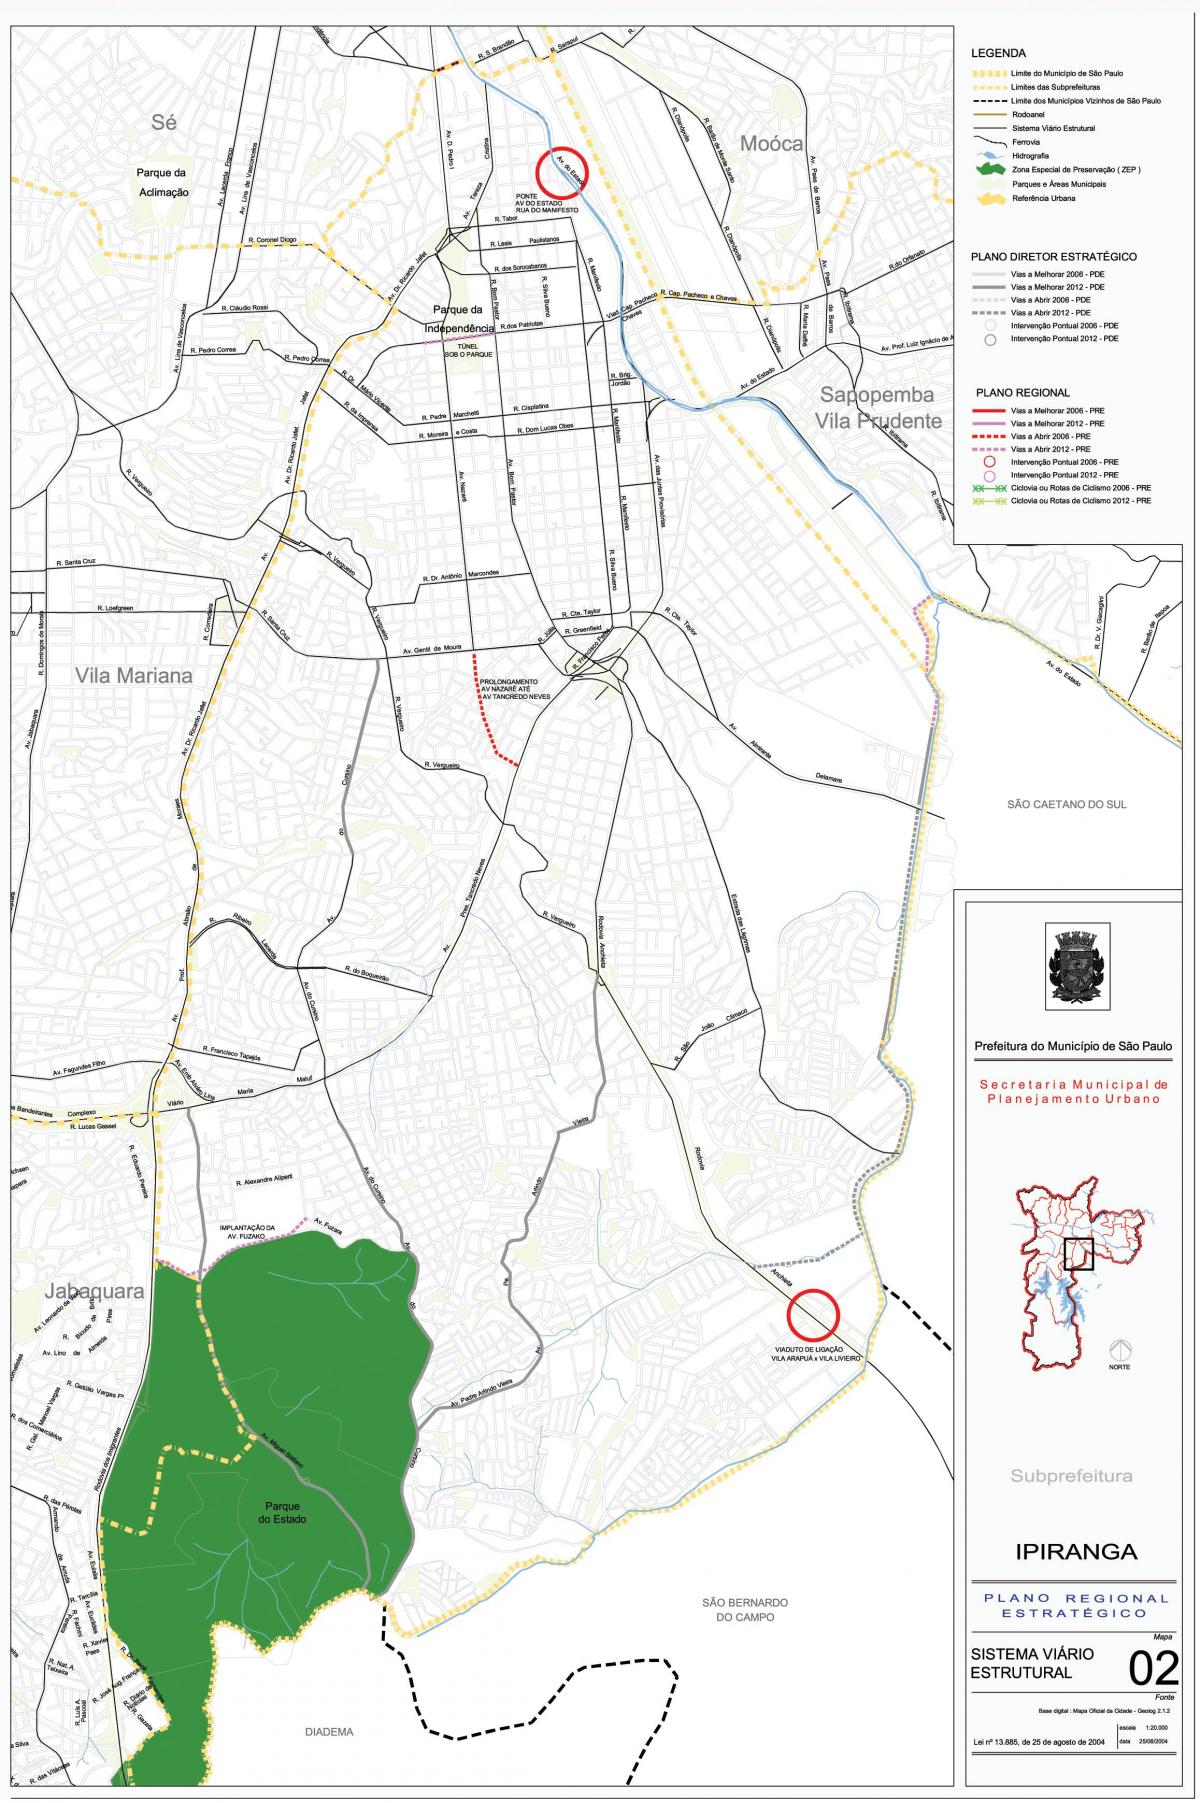 Mapa ng Ipiranga São Paulo - Kalsada